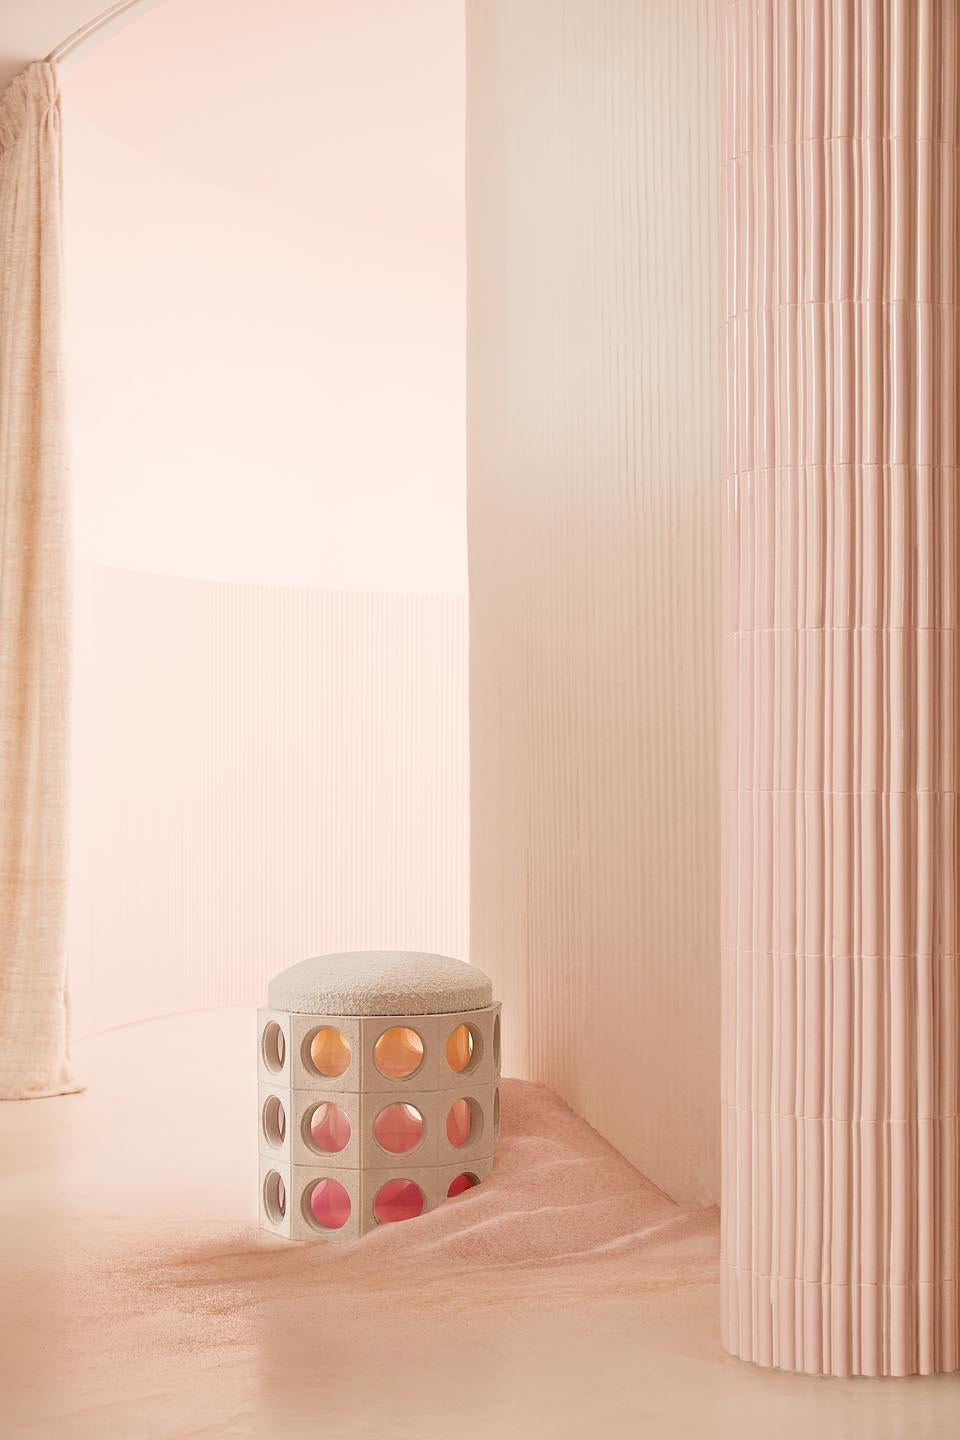 Other Element Pink Pouf by Patricia Bustos de la Torre For Sale